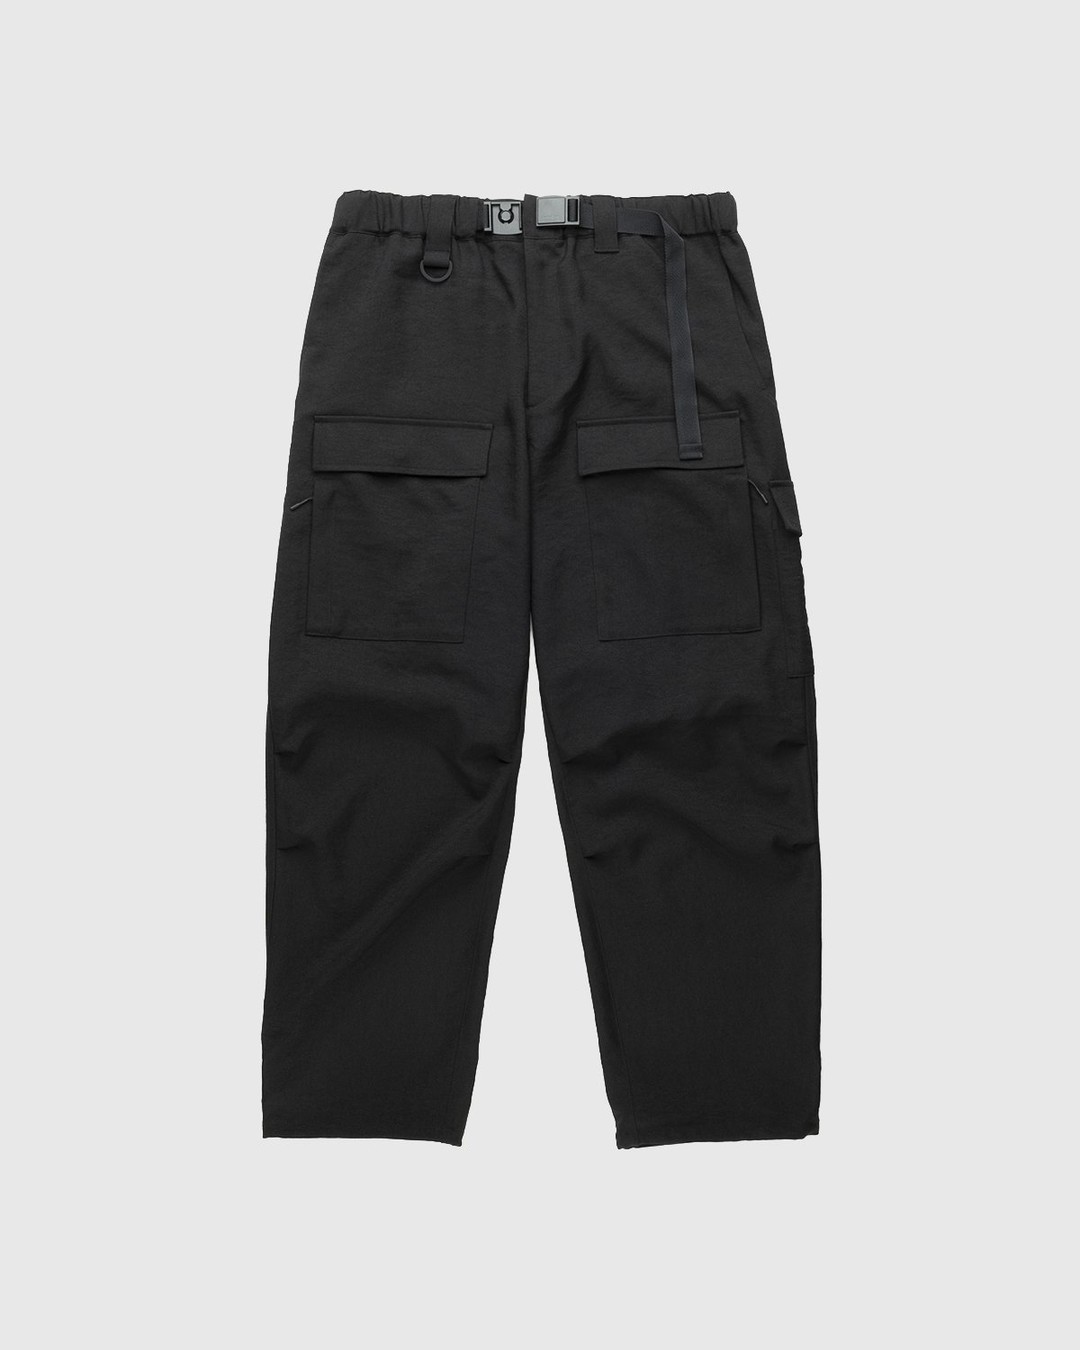 Y-3 – Classic Sport Uniform Cargo Pants Black - Pants - Black - Image 1